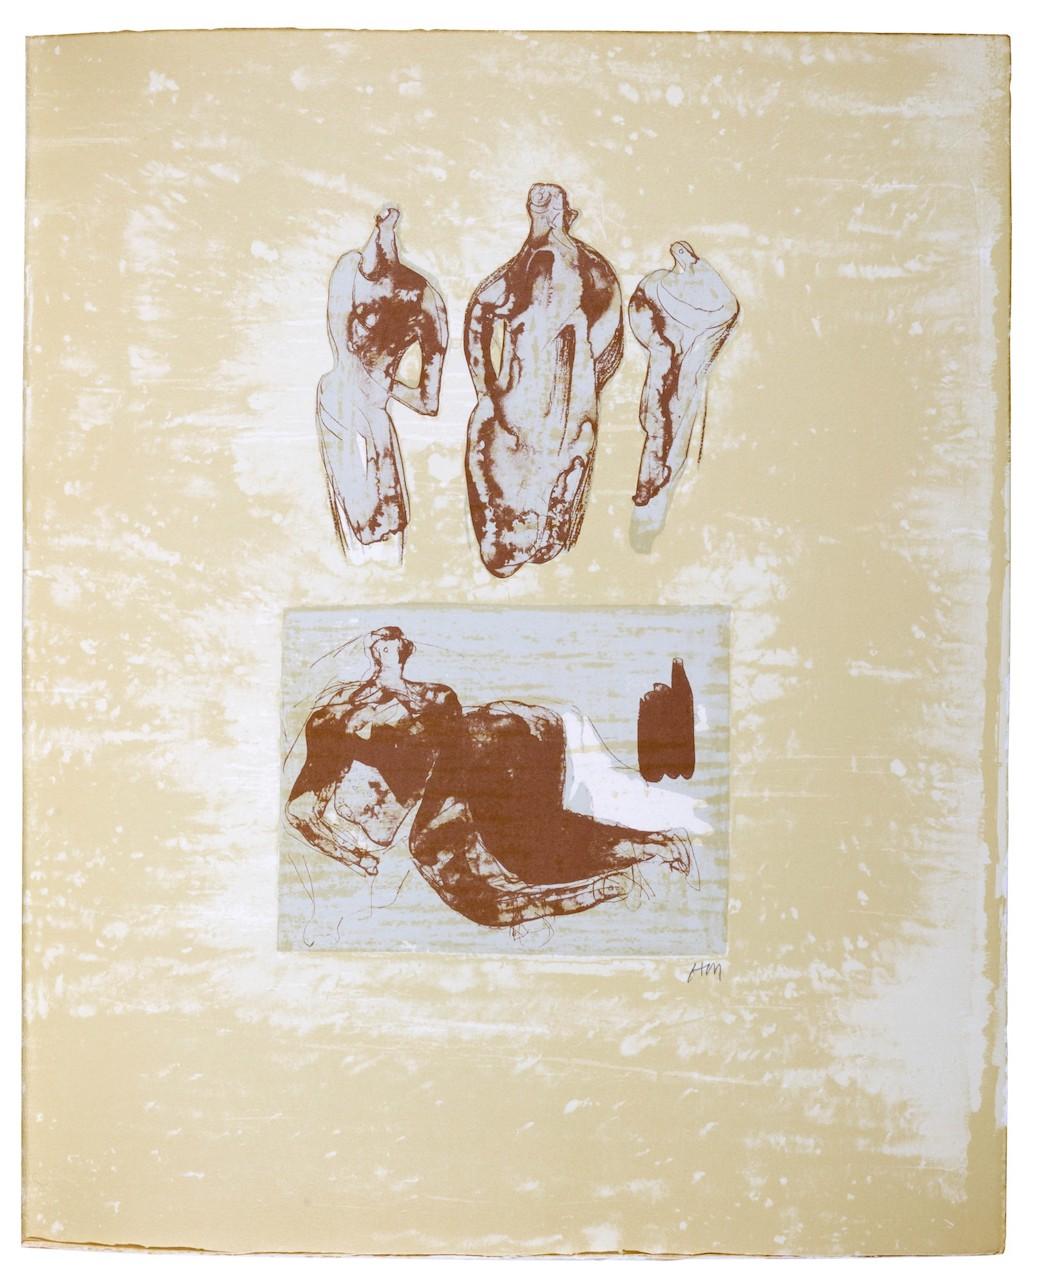 Idées provenant d'un carnet de croquis - Print de Henry Moore